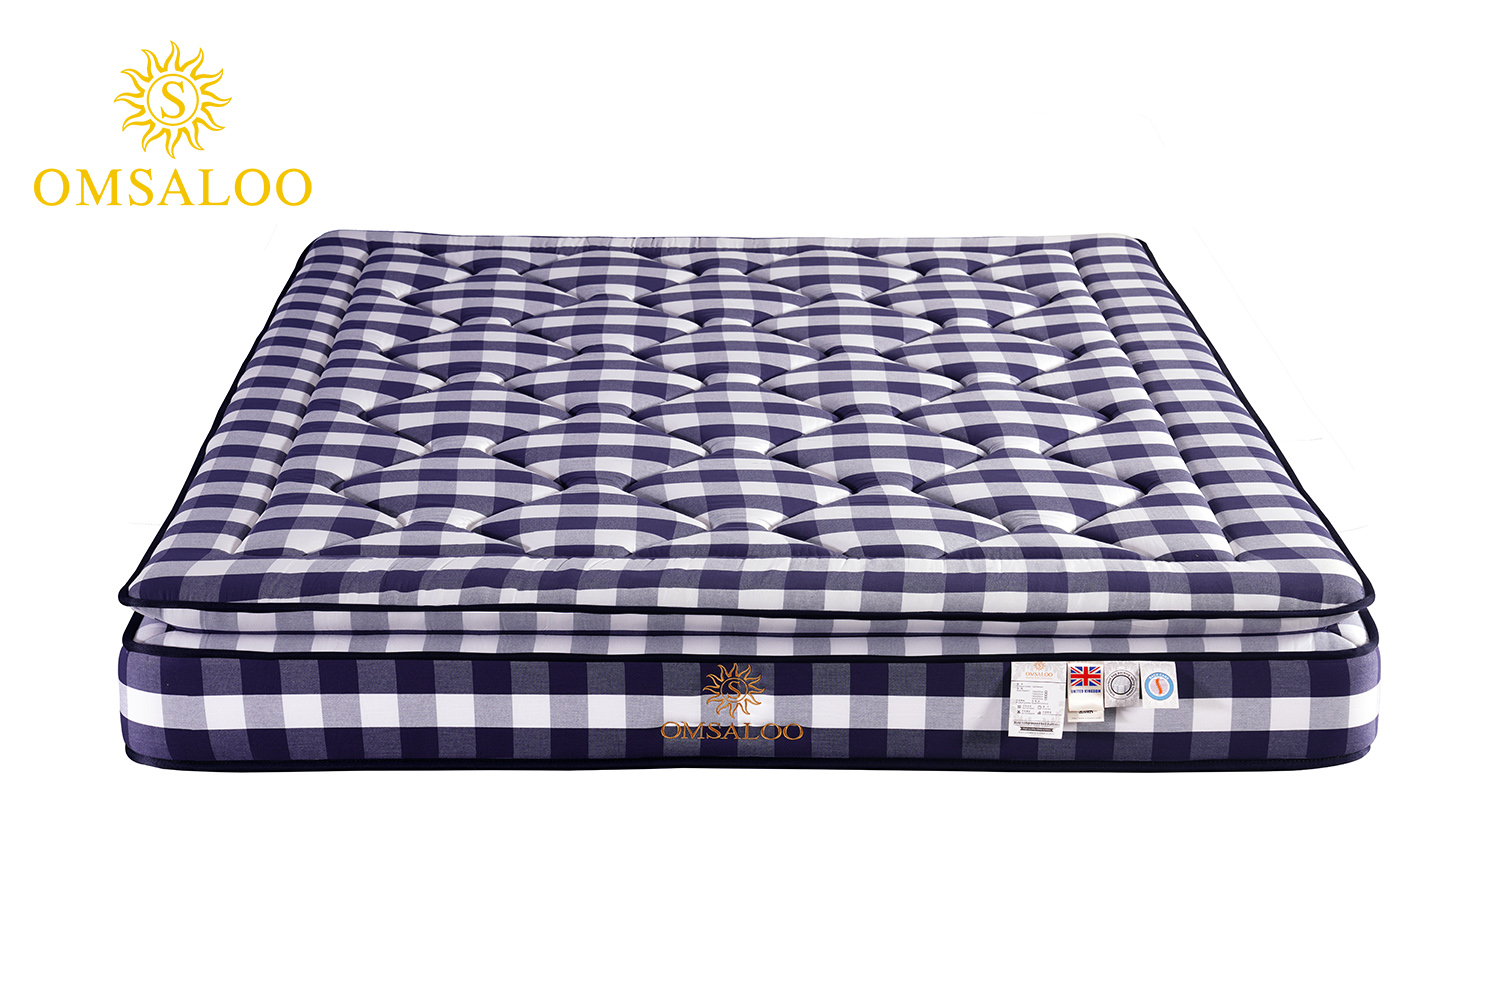 Advanced custom mattress